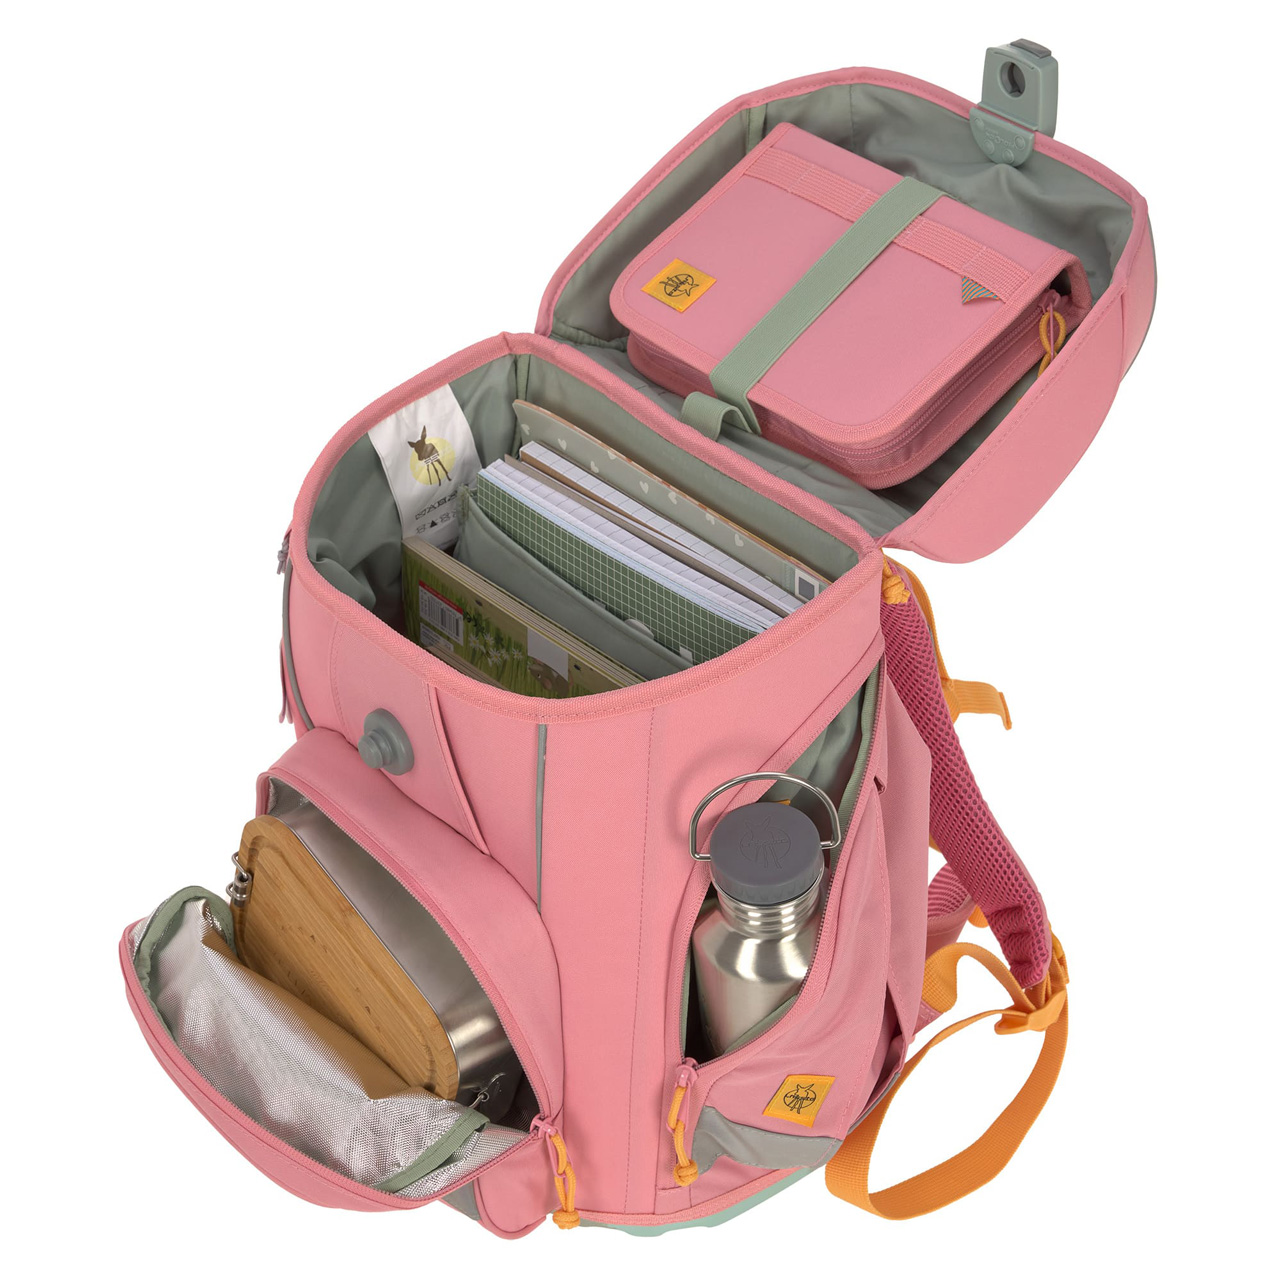 Laessig-Schulranzen-Set-Boxy-Unique-pink-7-teilig-ansicht-inhalt-1205015634-lafueliki